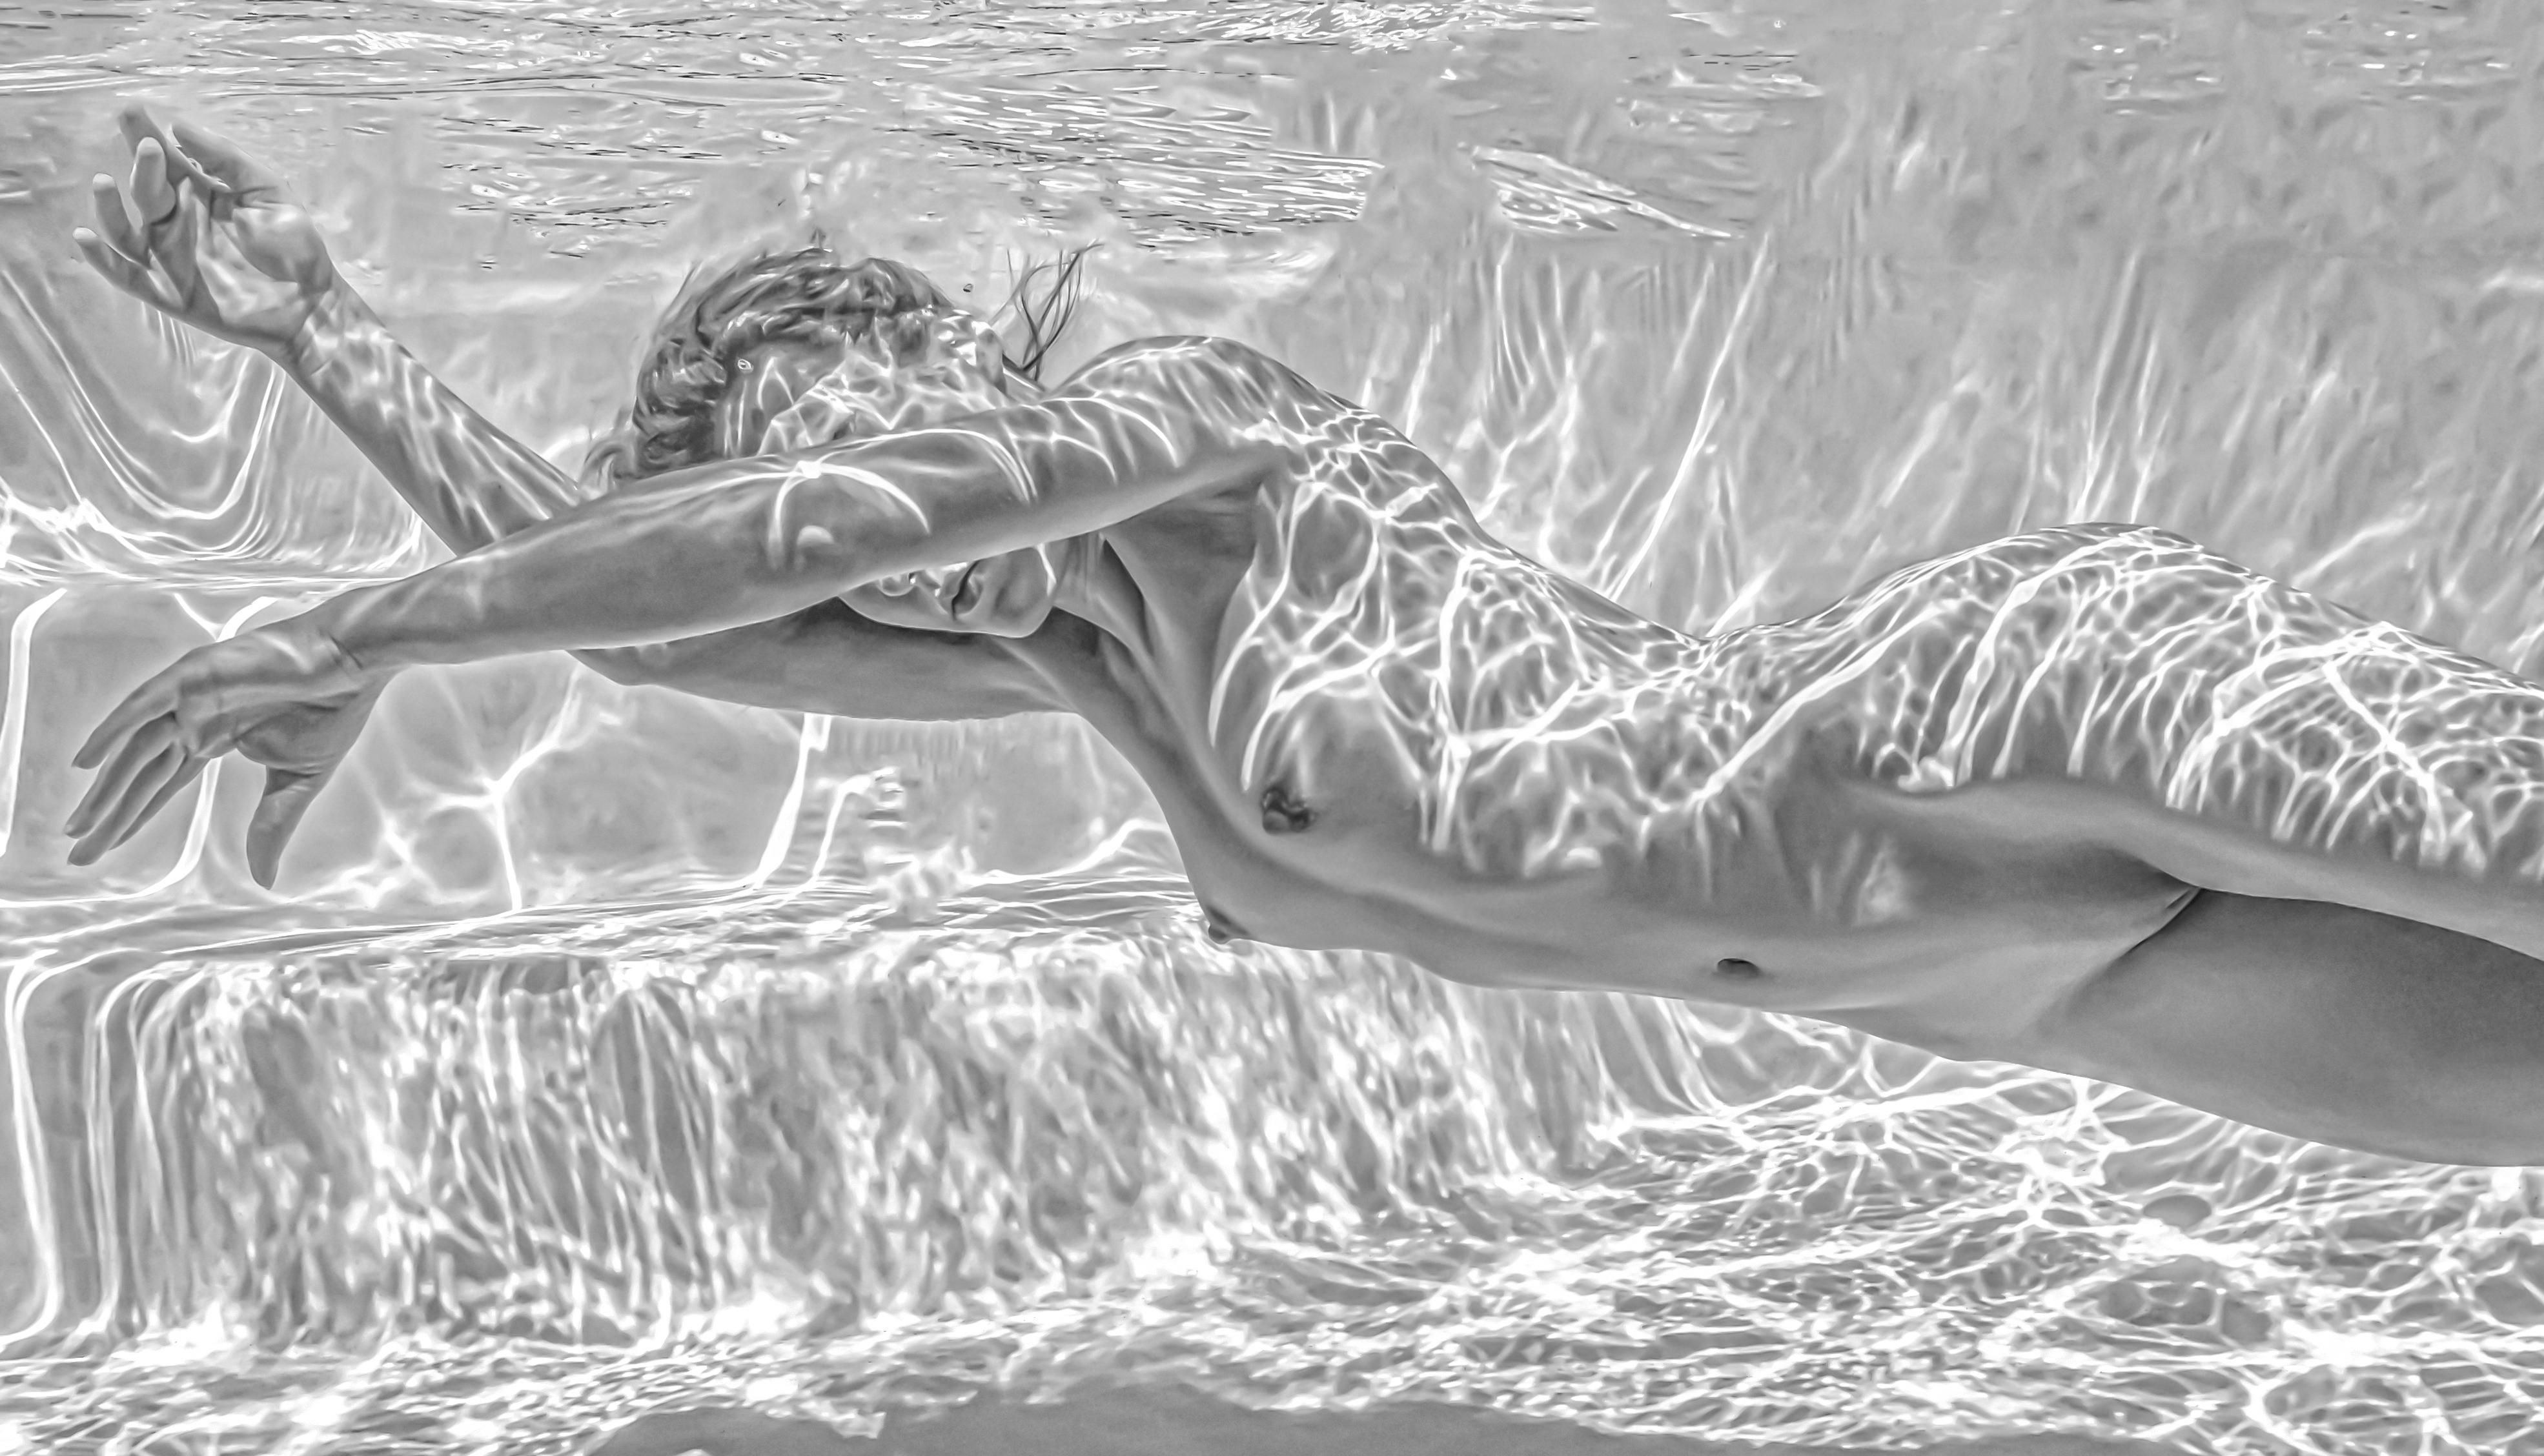 Whiting - photographie sous-marine de nu en noir et blanc - tirage sur papier 24